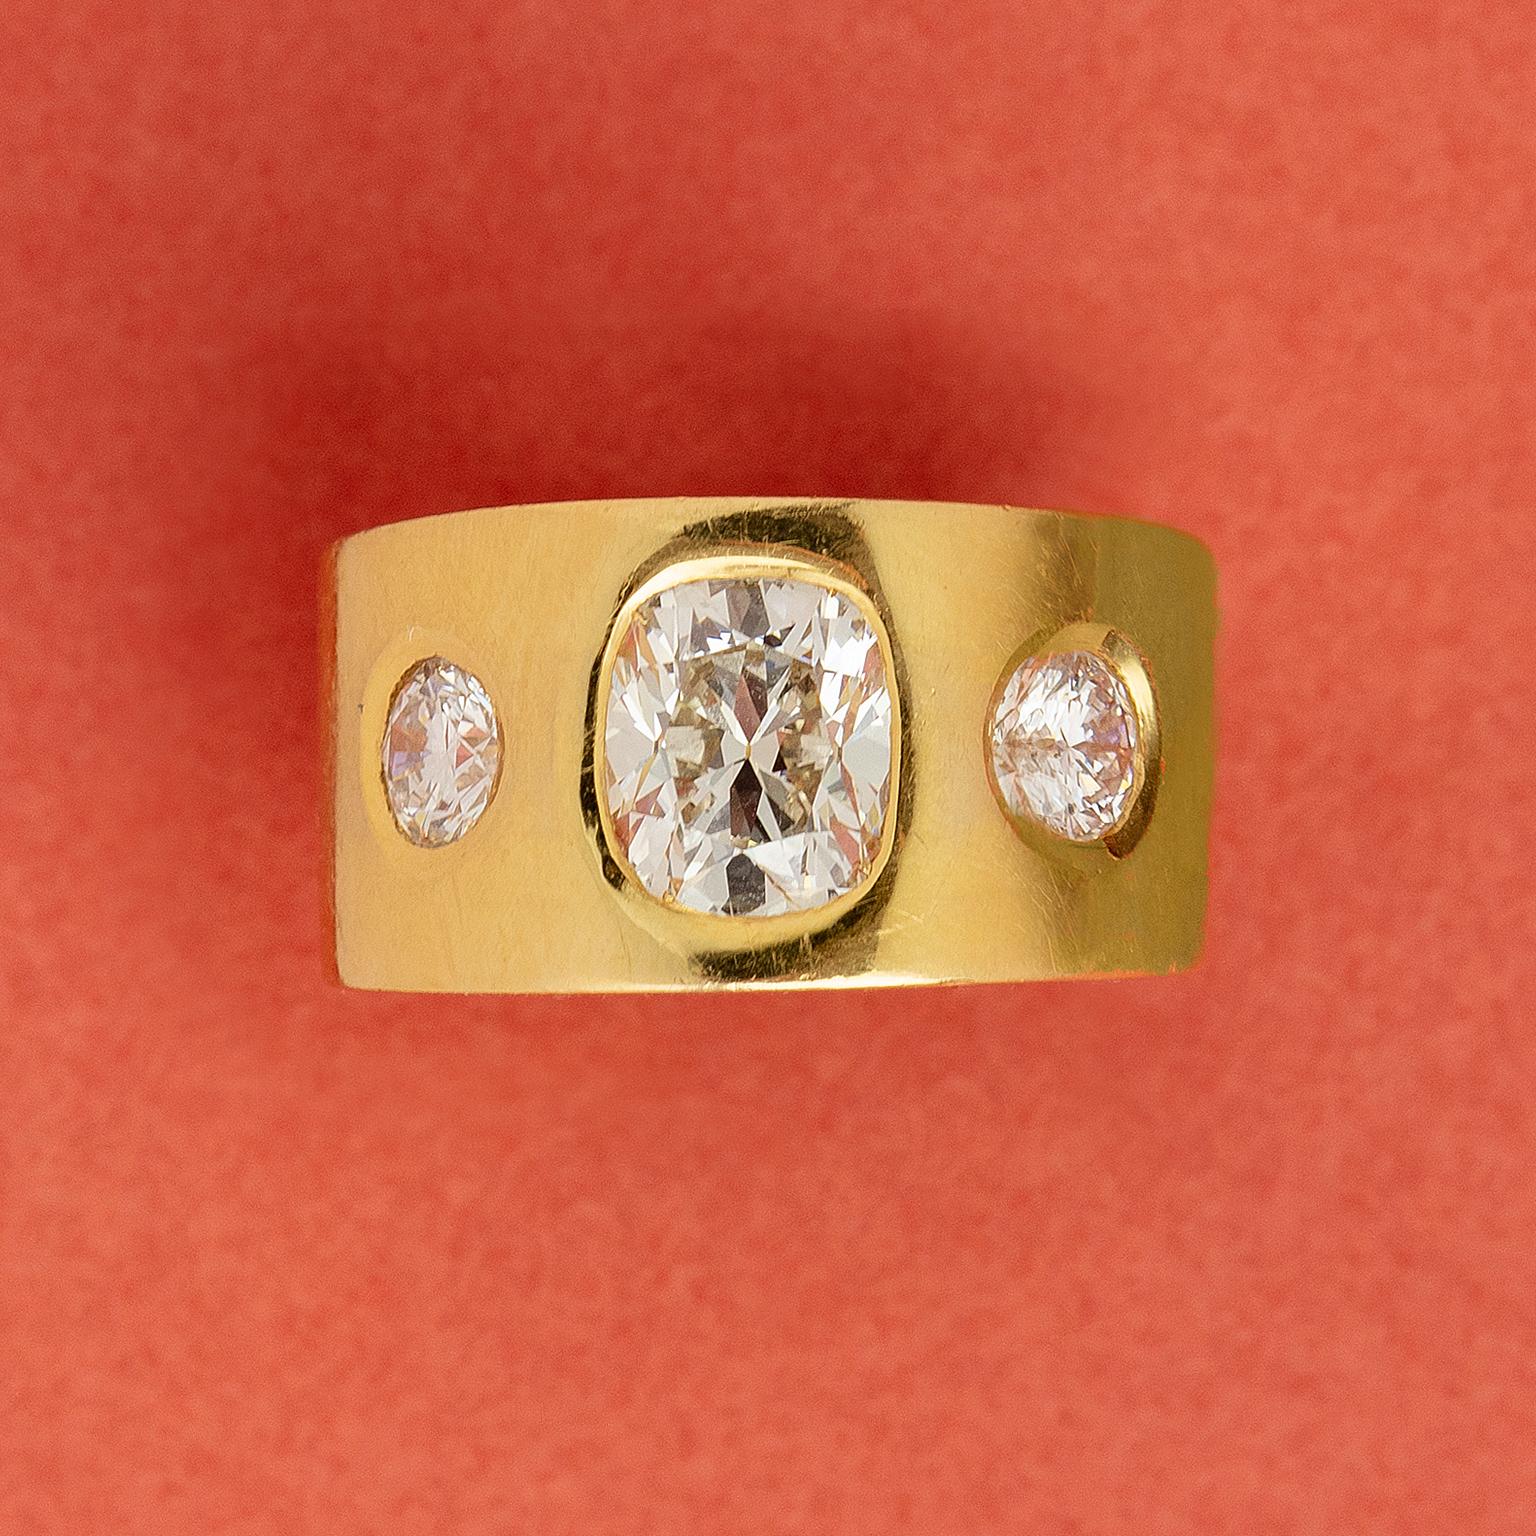 Bague à anneau en or 18 carats, volumineuse, à trois pierres aux bords tranchants, sertie d'un gros diamant taille coussin (env. 2,6 carats, J, VS2) et de deux diamants taille brillant (env. 0,50 carat chacun, F-G, VS2-SI1), le tout dans une monture